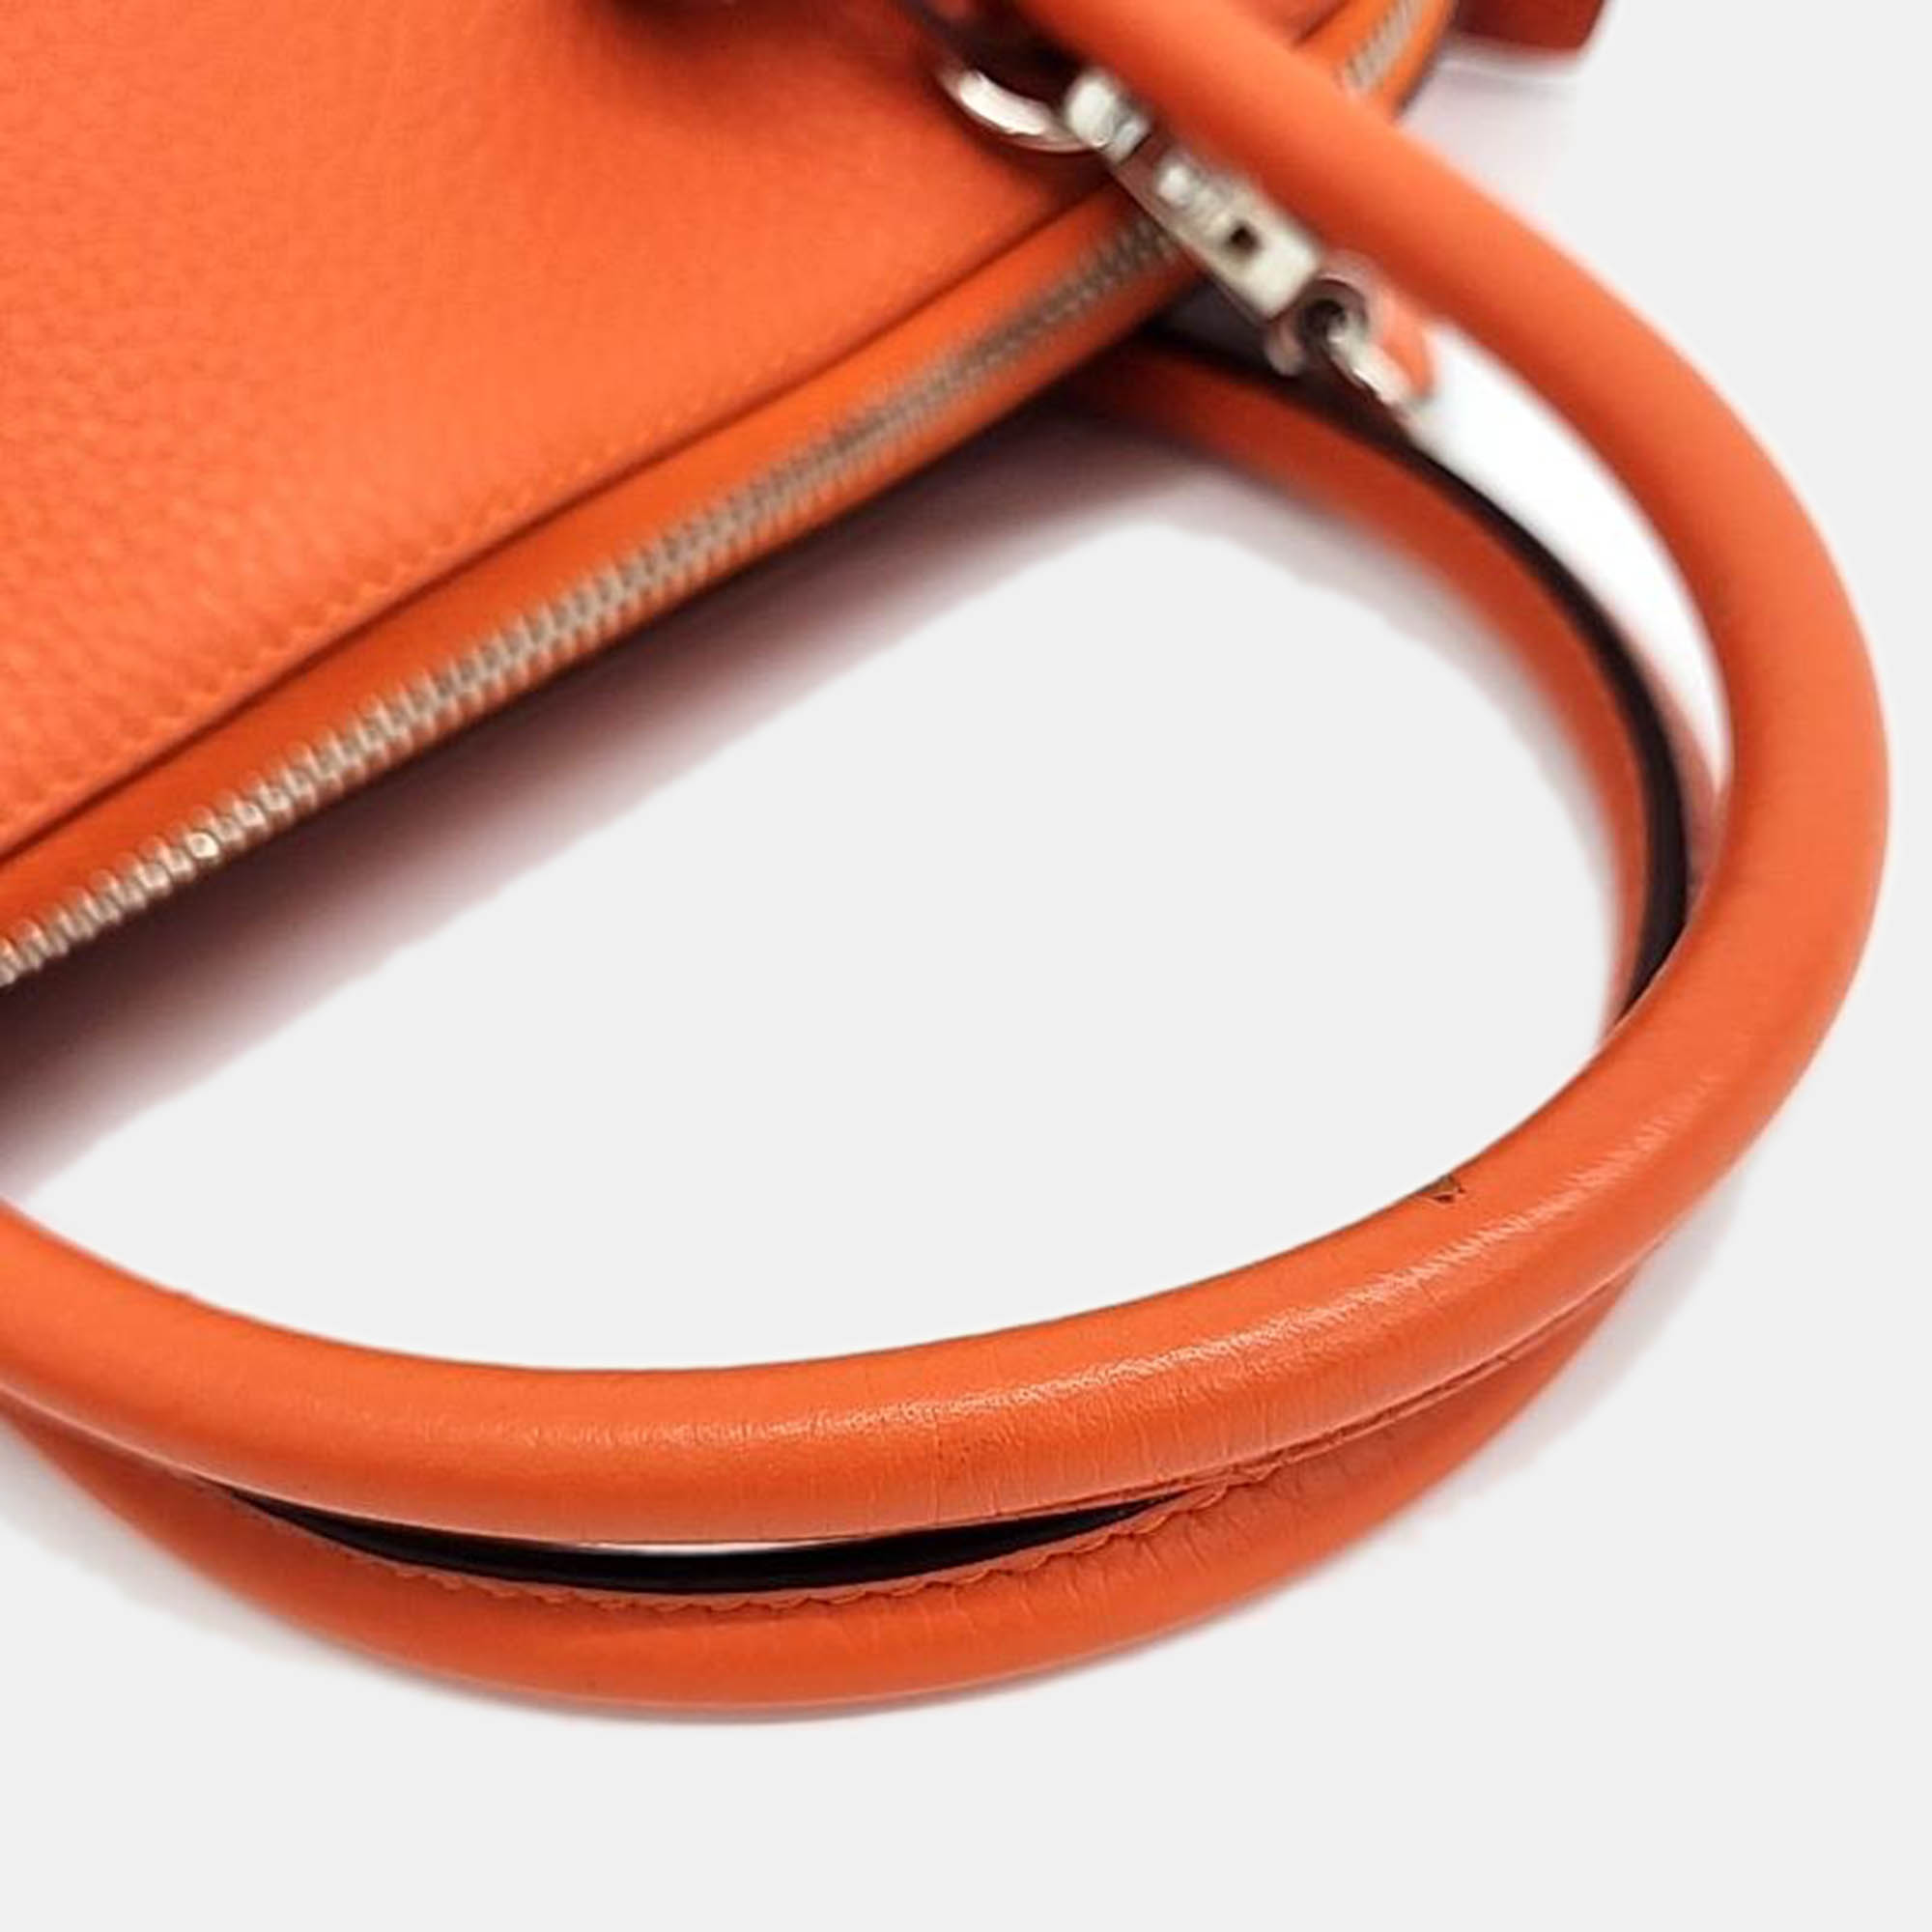 Hermes Orange Leather Bolide 31 (R) Bag